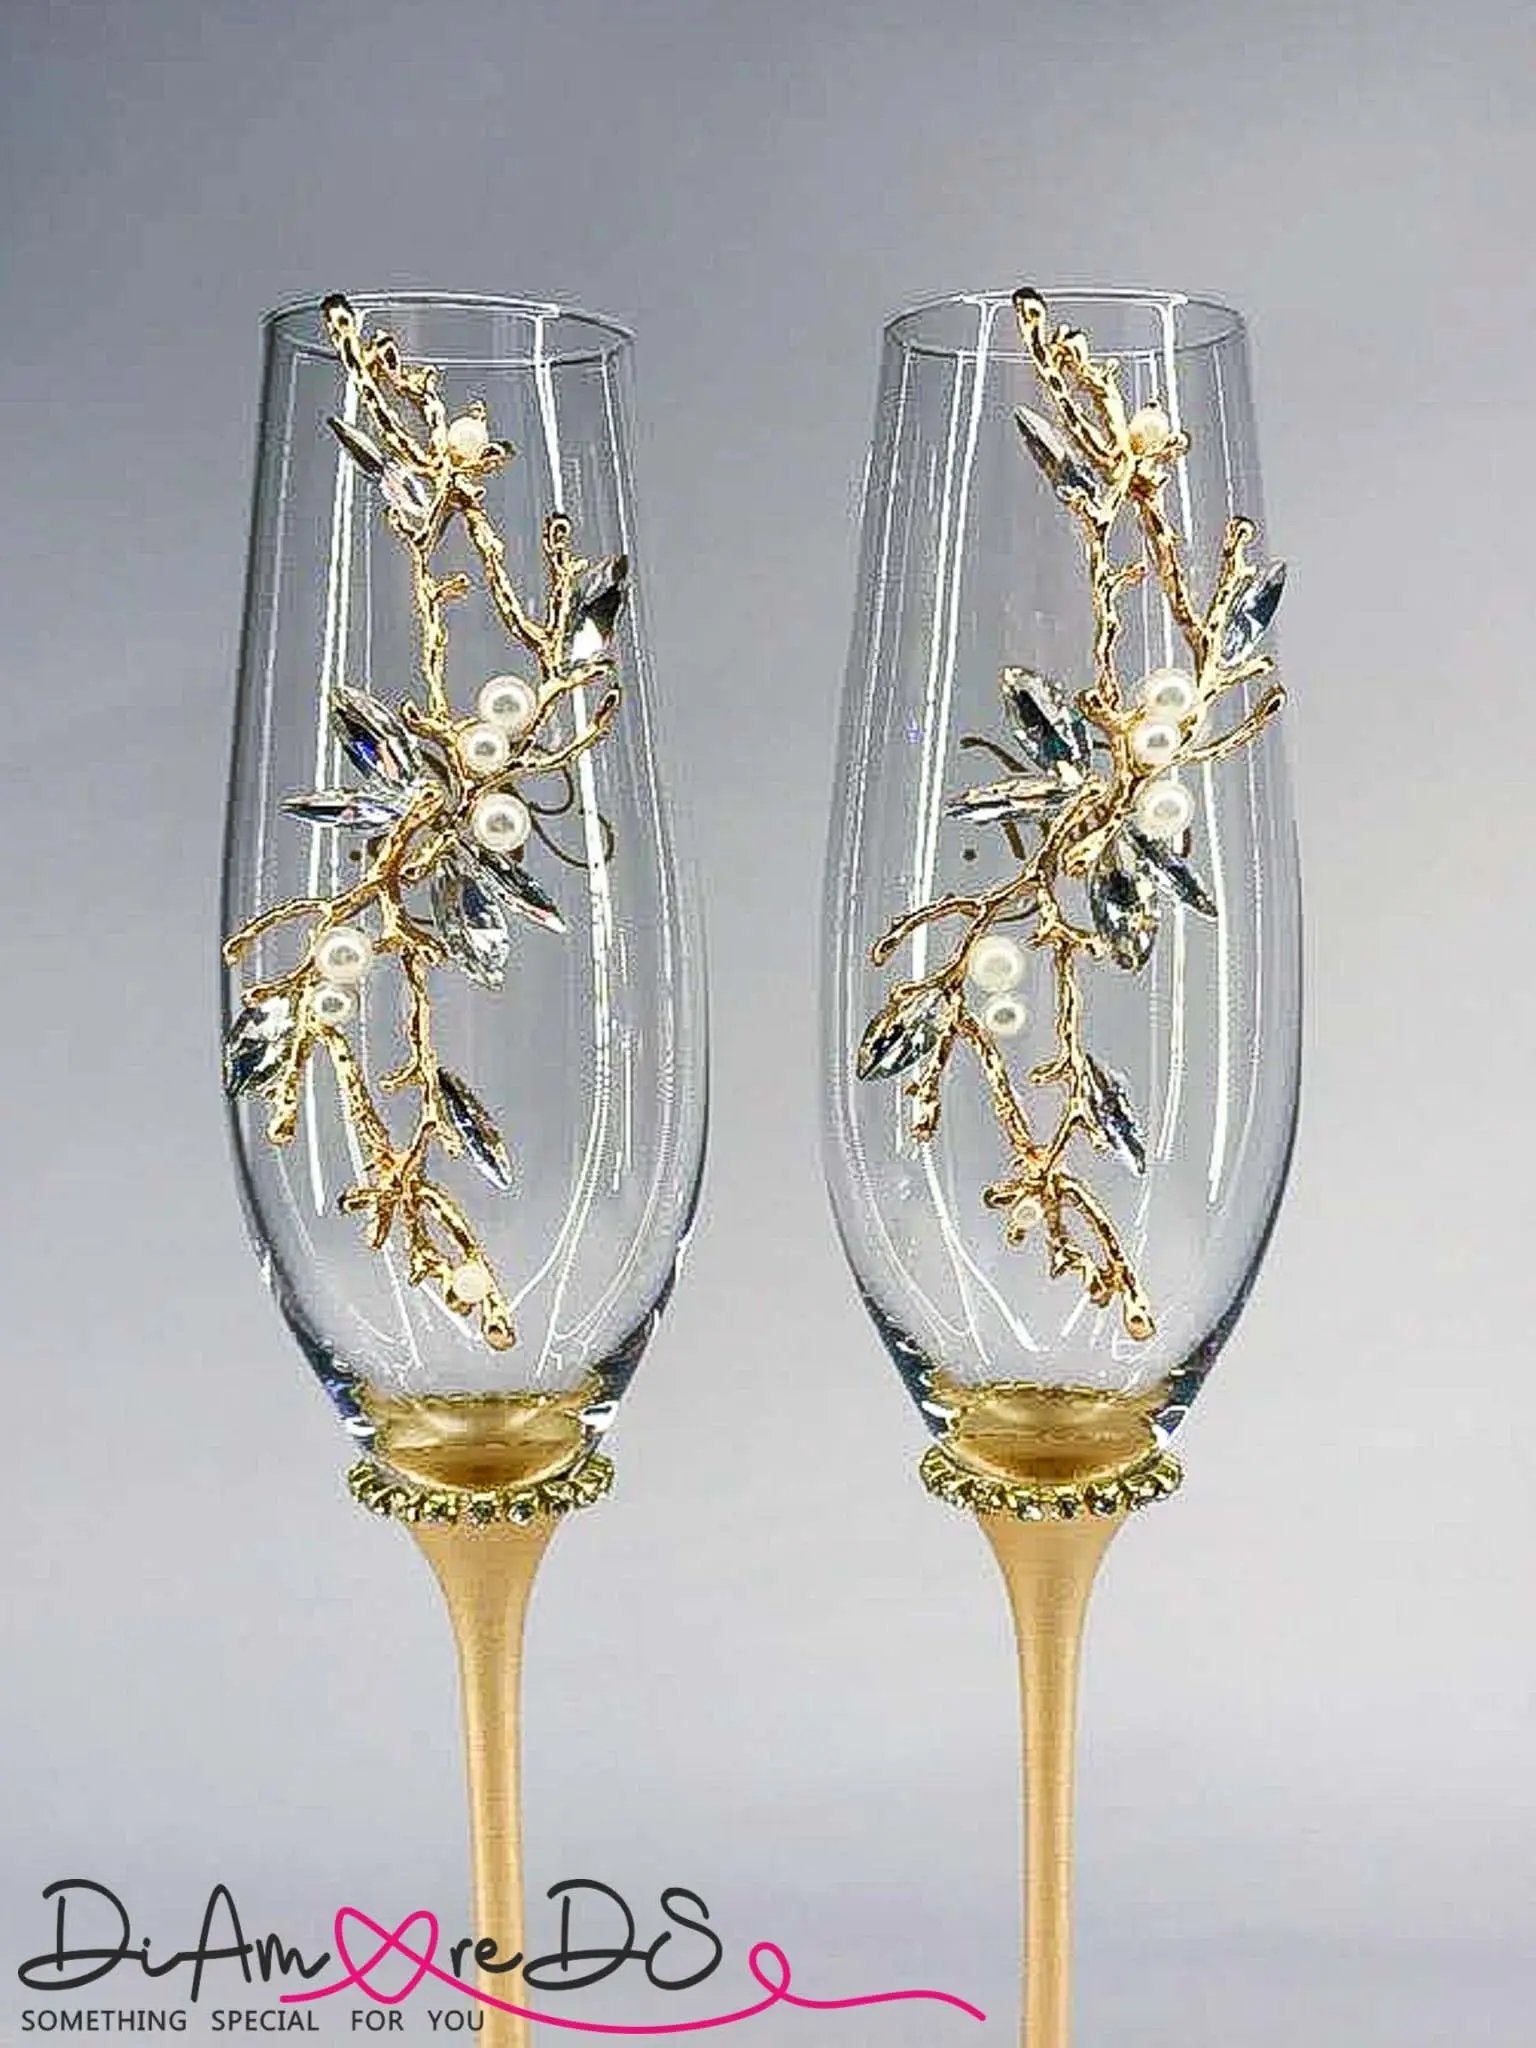 Fiora Gold wedding glasses - a DiAmoreDS masterpiece